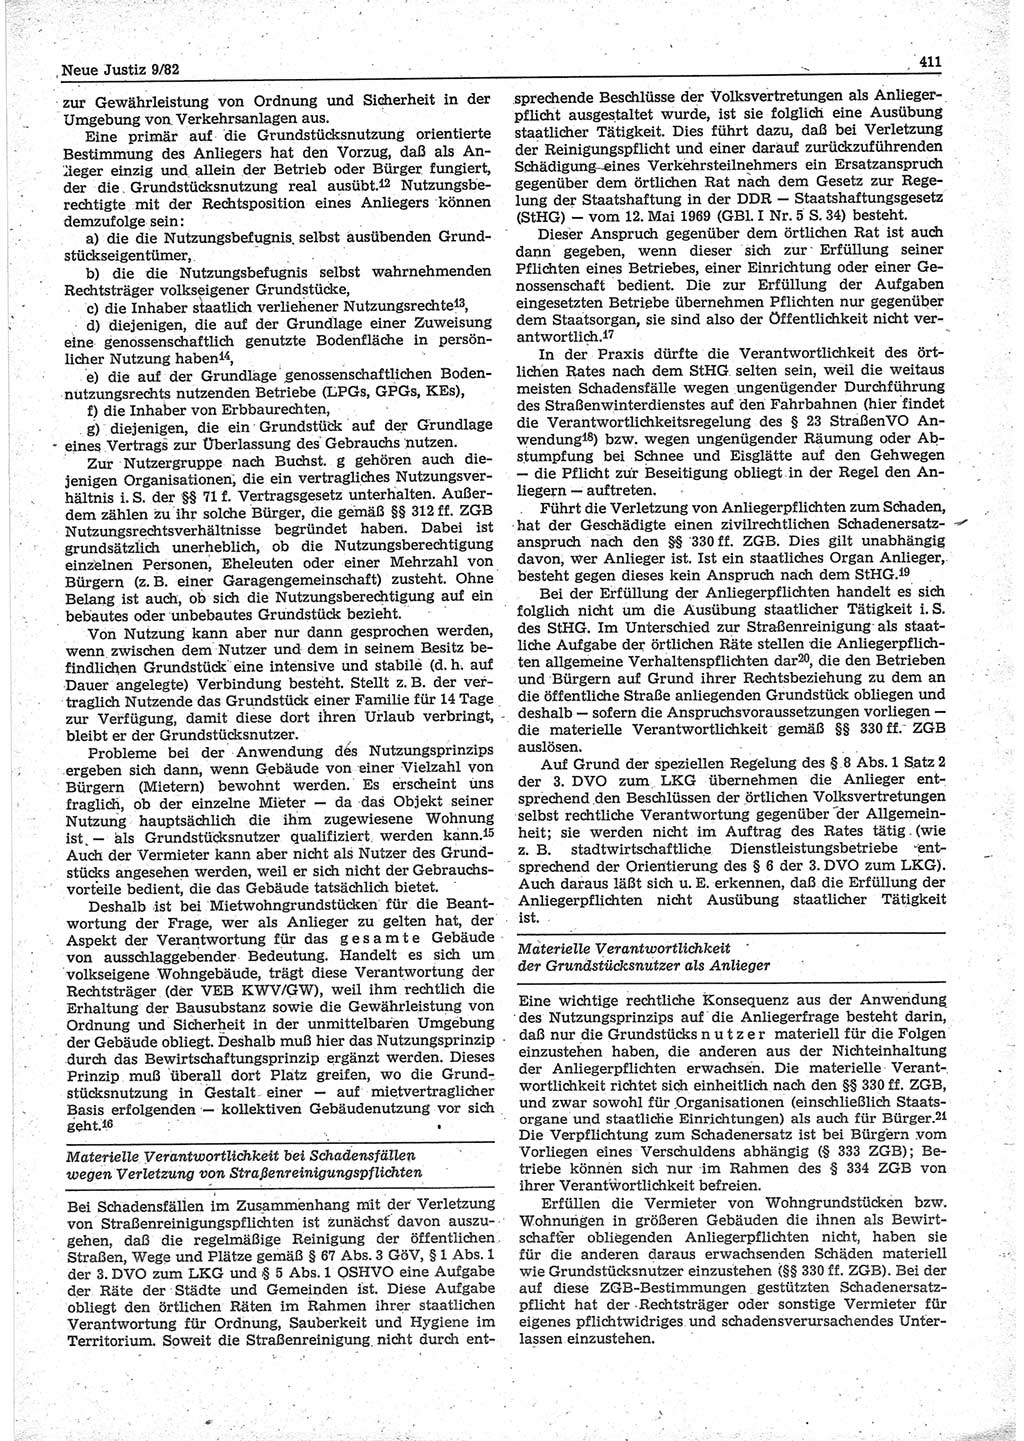 Neue Justiz (NJ), Zeitschrift für sozialistisches Recht und Gesetzlichkeit [Deutsche Demokratische Republik (DDR)], 36. Jahrgang 1982, Seite 411 (NJ DDR 1982, S. 411)